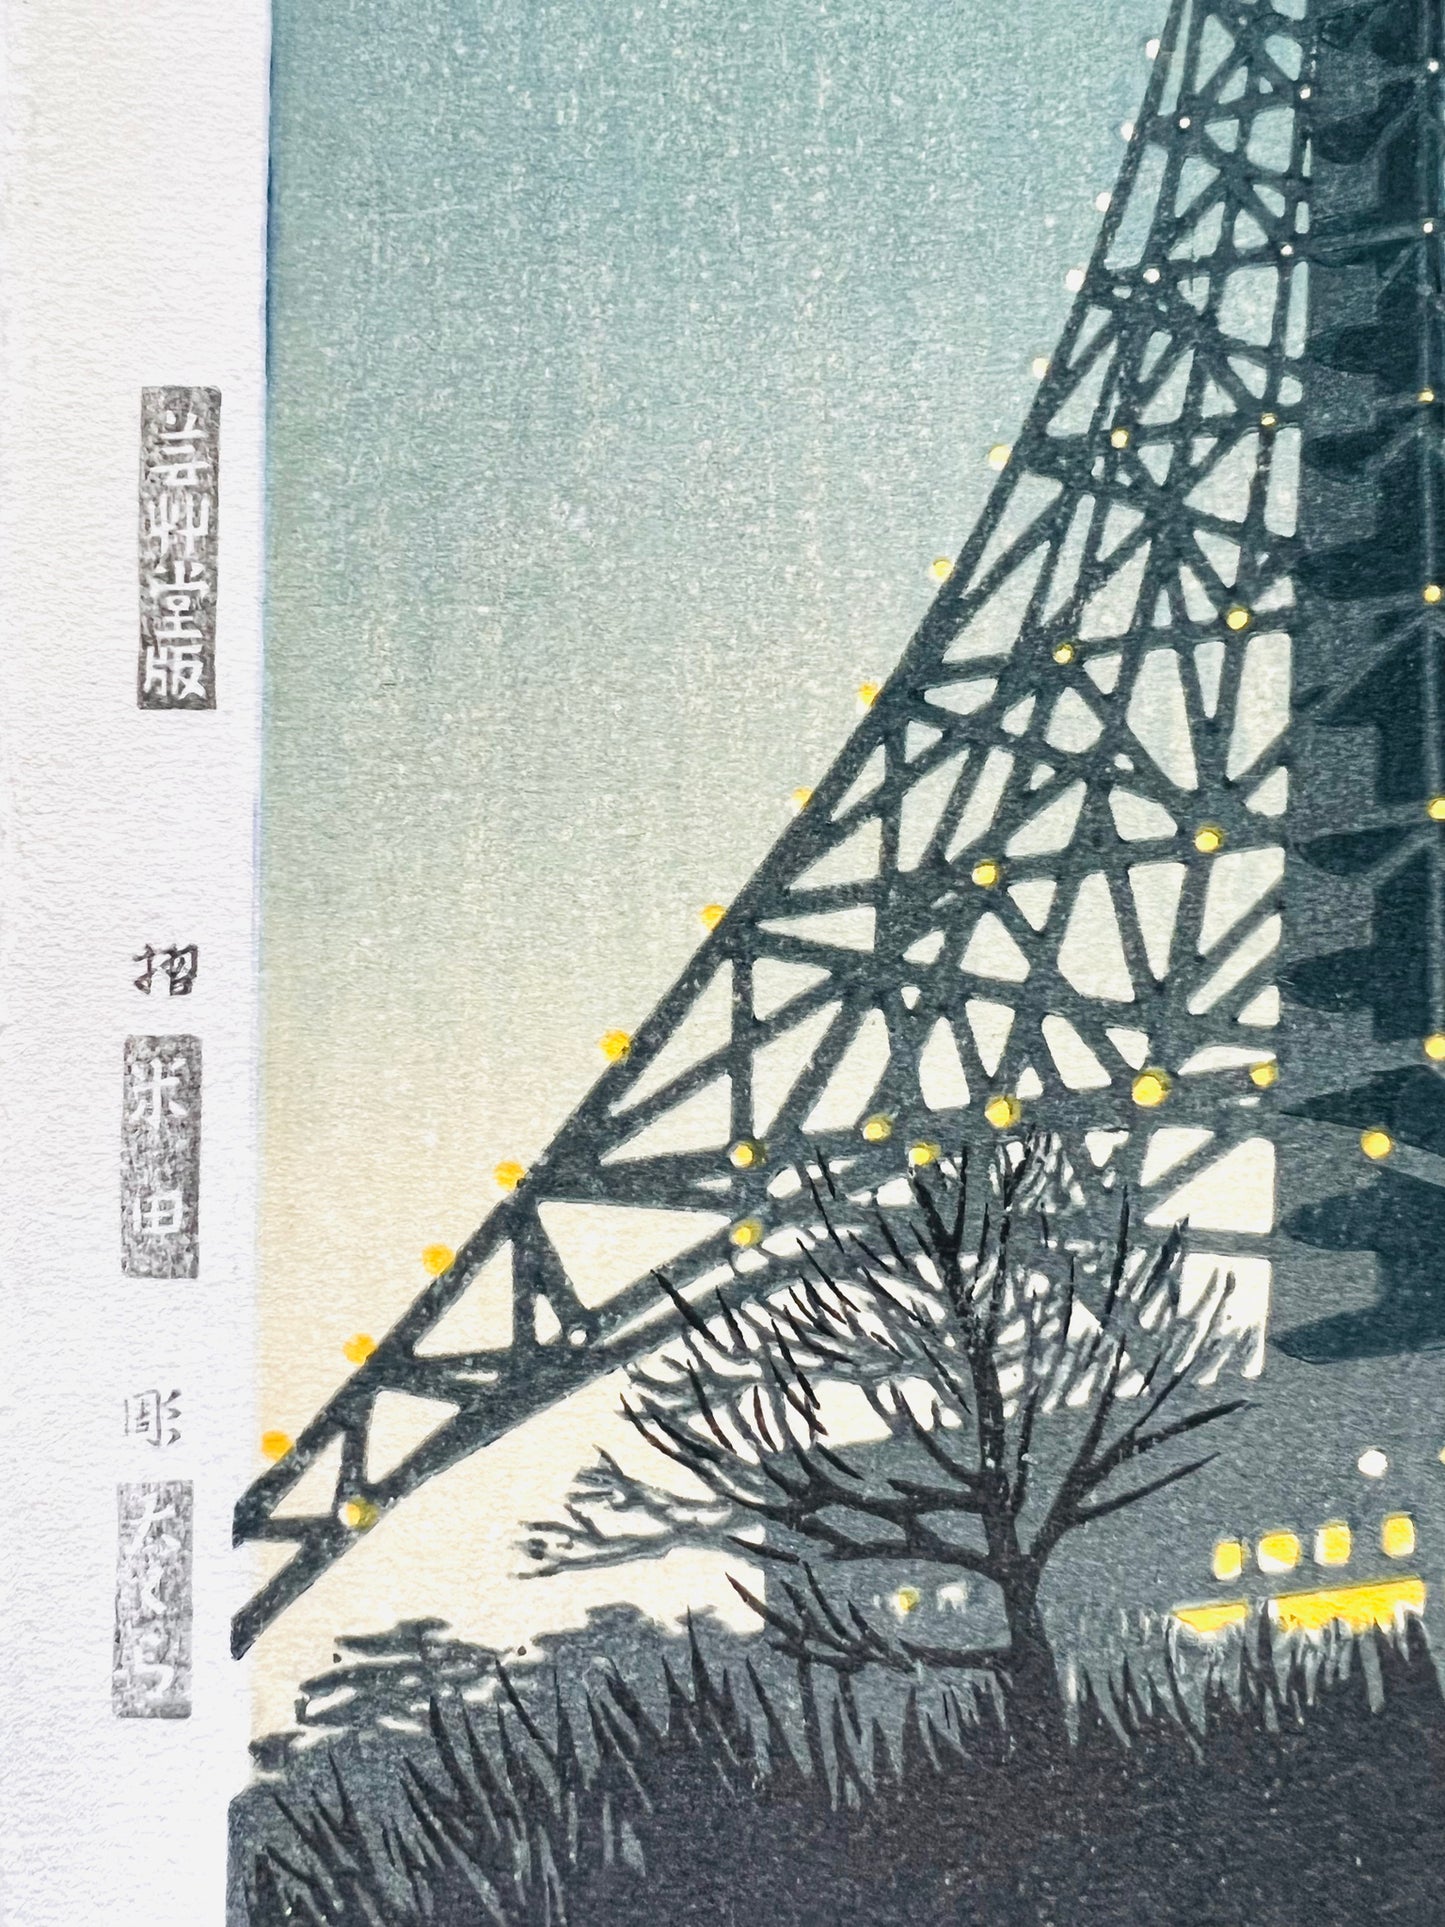 estampe japonaise shin-hanga tour de Tokyo illuminée la nuit, texte en japonais sur la marge